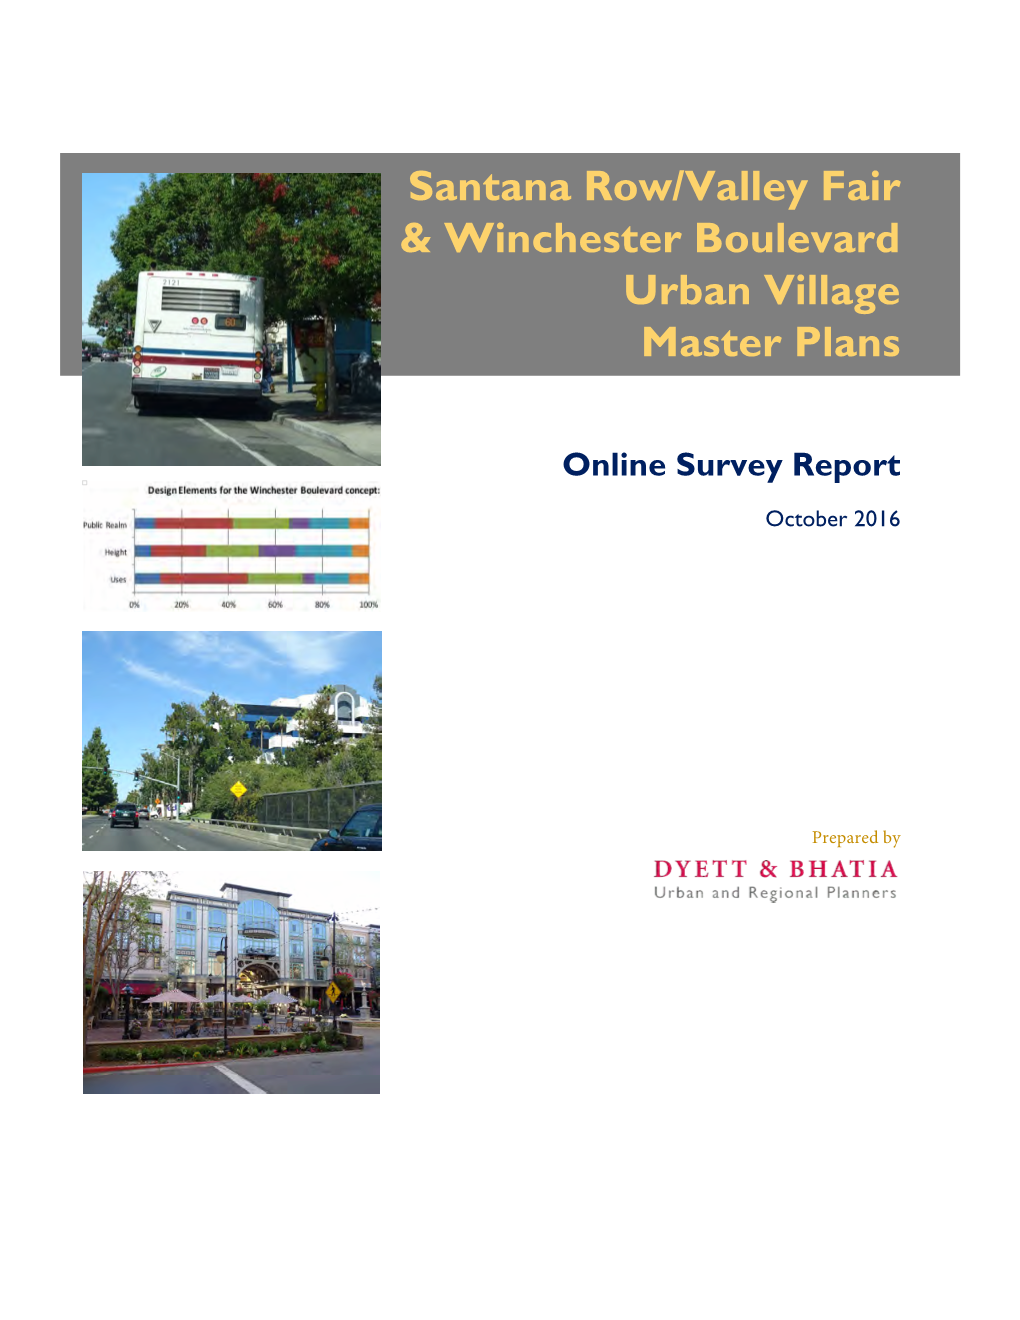 Santana Row/Valley Fair & Winchester Boulevard Urban